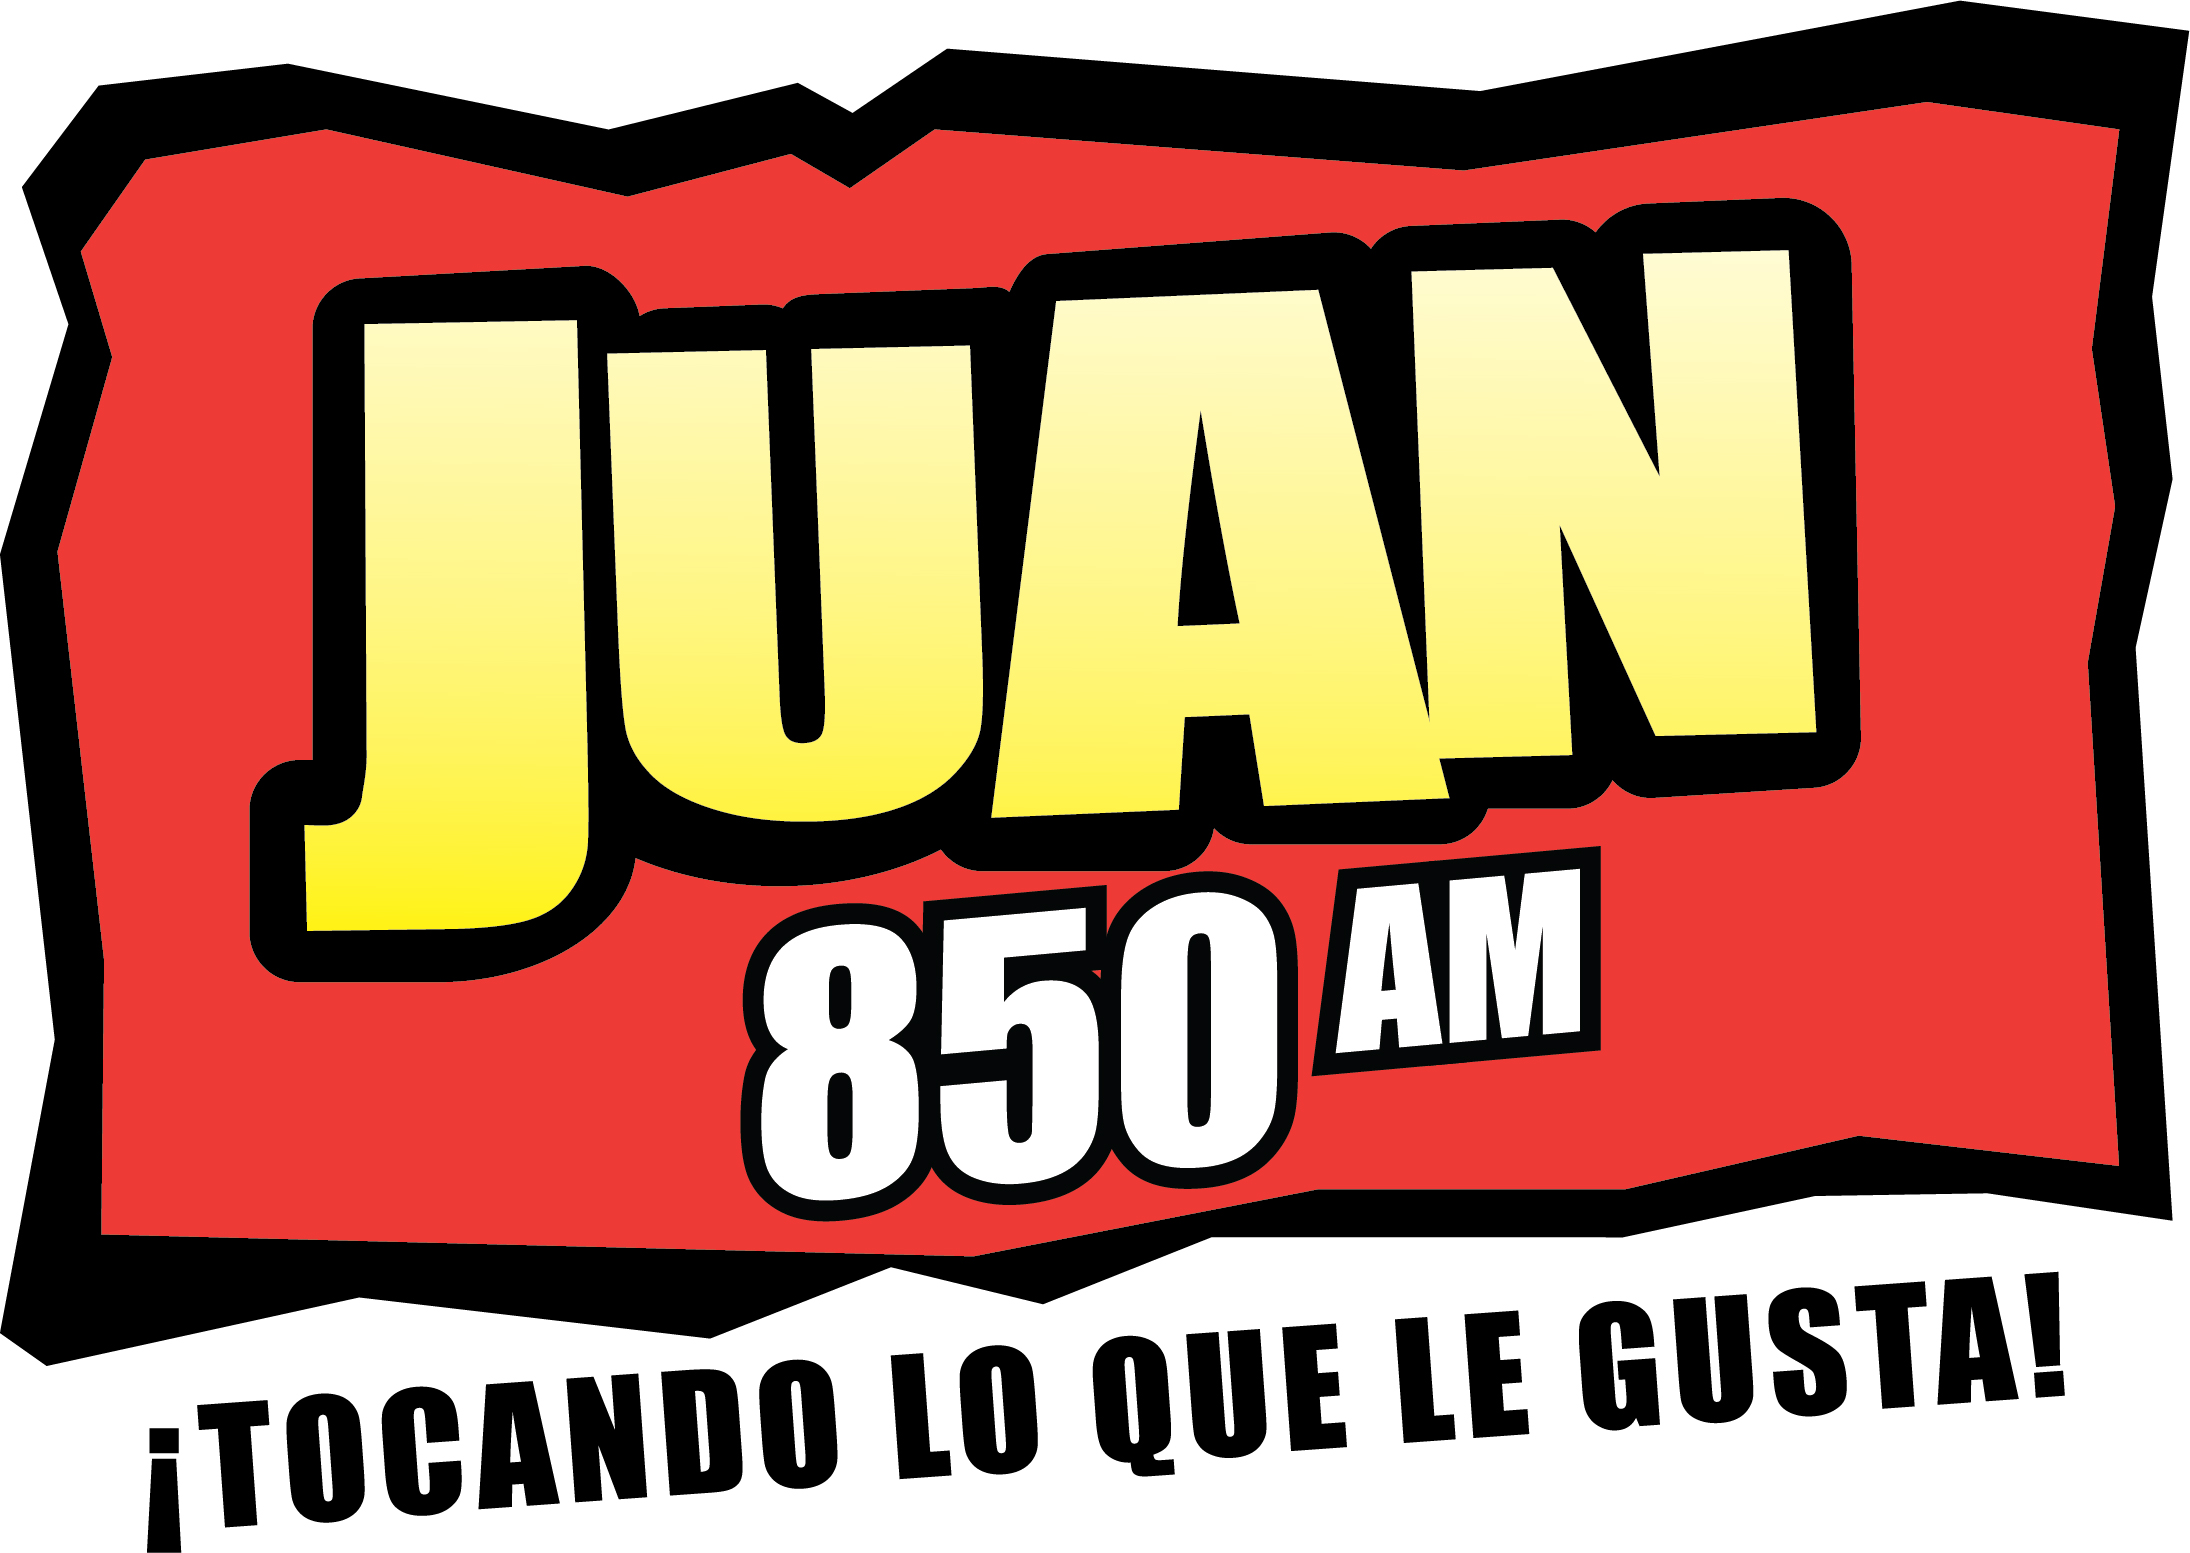 Juan 850 AM. Tocando Lo Que Le Gusta!